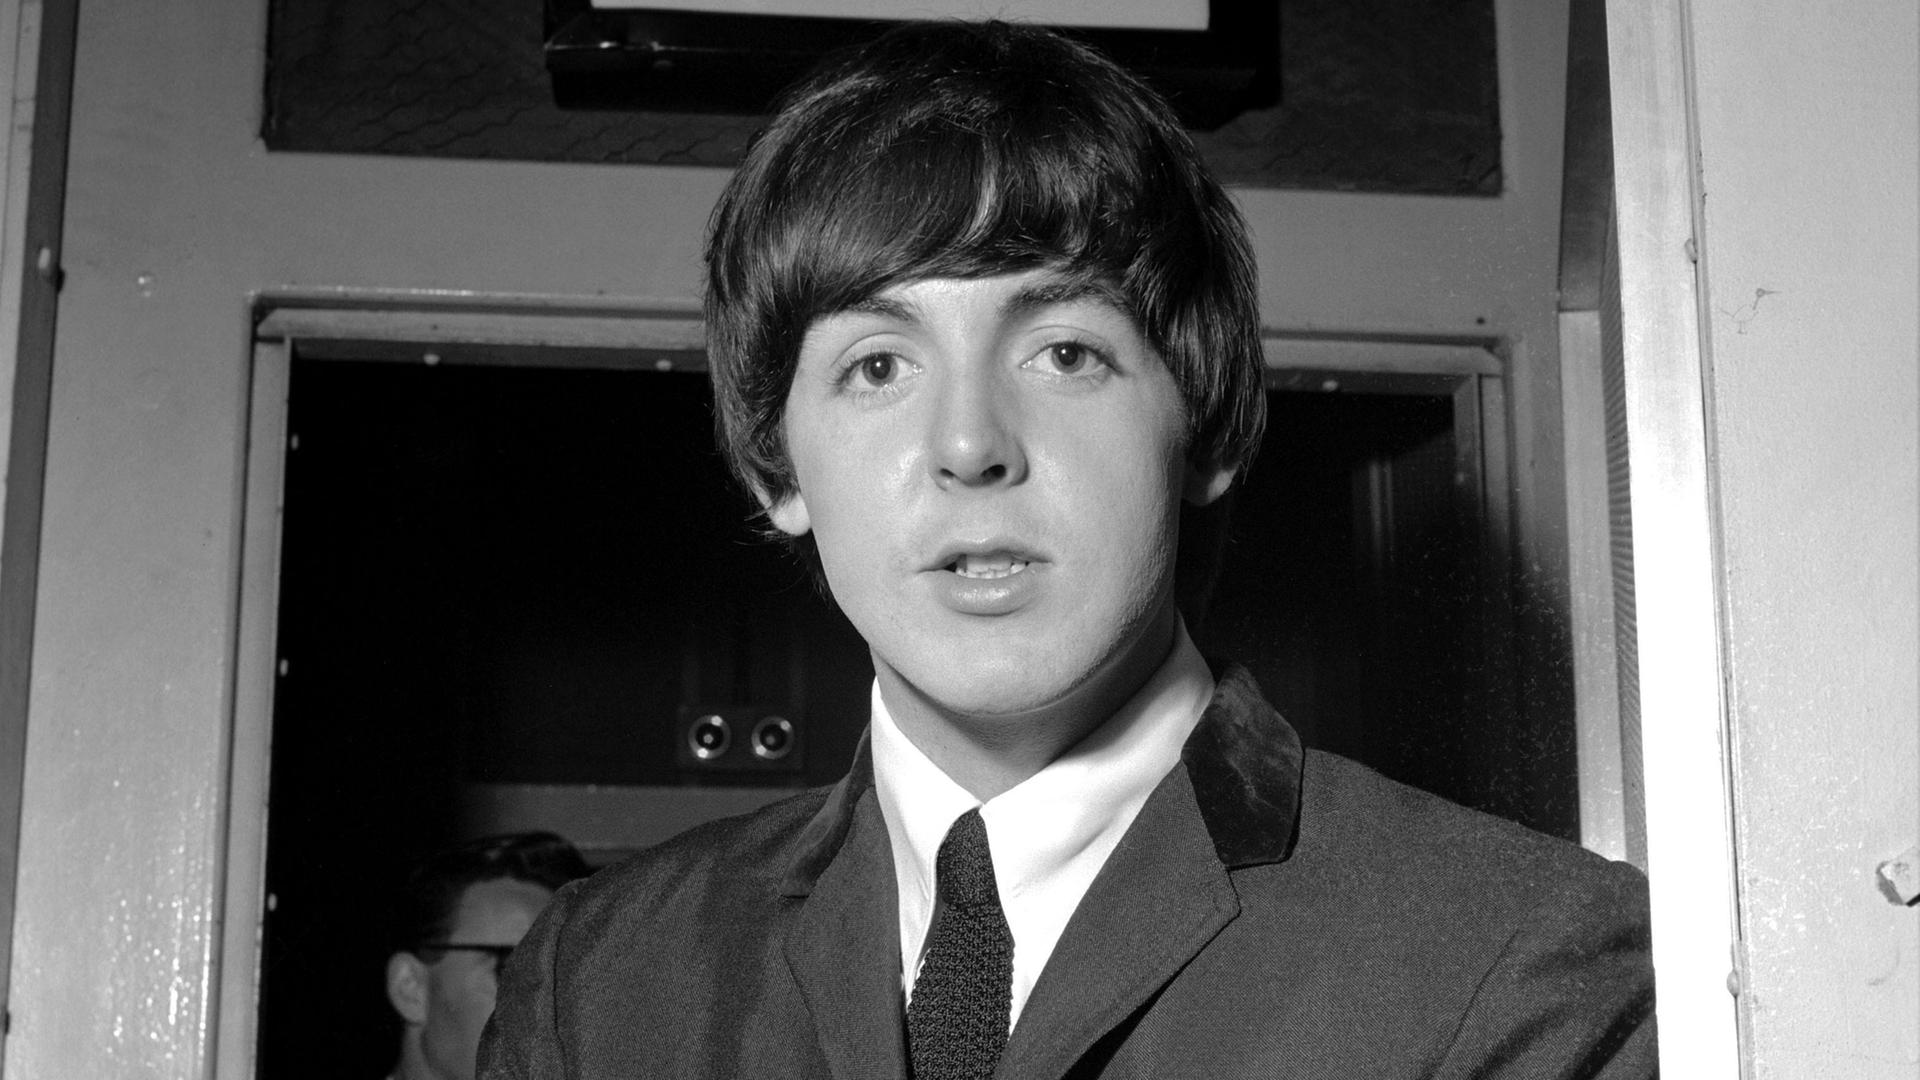 Eine alte Schwarzweißaufnahme von 1964 zeigt den jungen Paul McCartney, damals Sänger und Bassist bei den Beatles. Er trägt die typische Pilzkopffrisur mit Pony und Anzug und Krawatte.